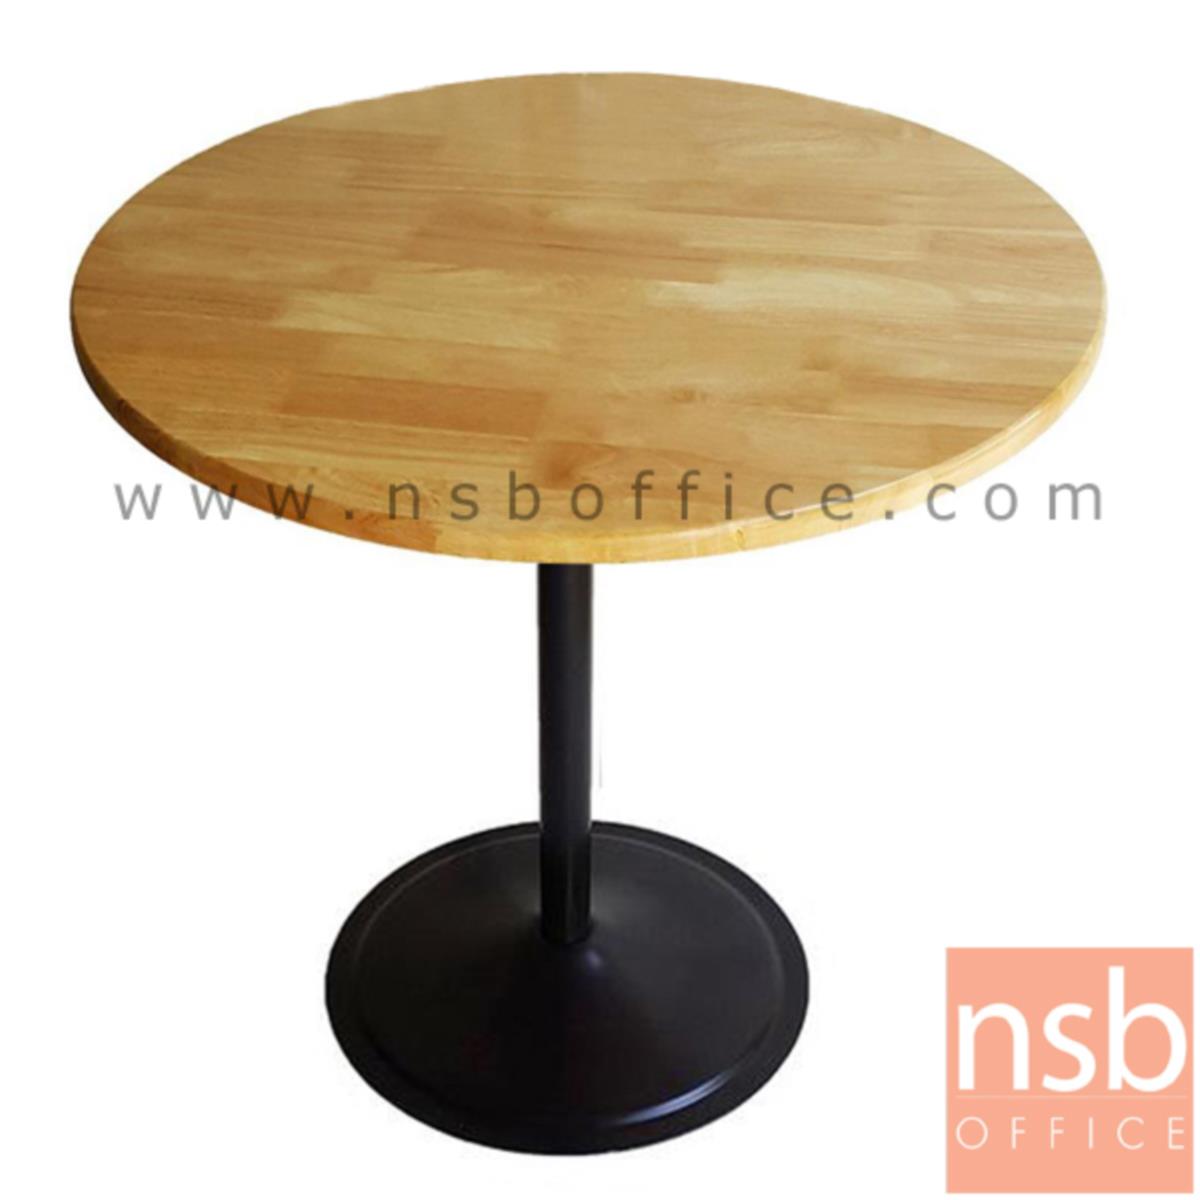 โต๊ะหน้าไม้ยางพารา รุ่น Kronbor (ครอนบอร์) ขนาด 60Di ,75Di cm. ขาเหล็ก 